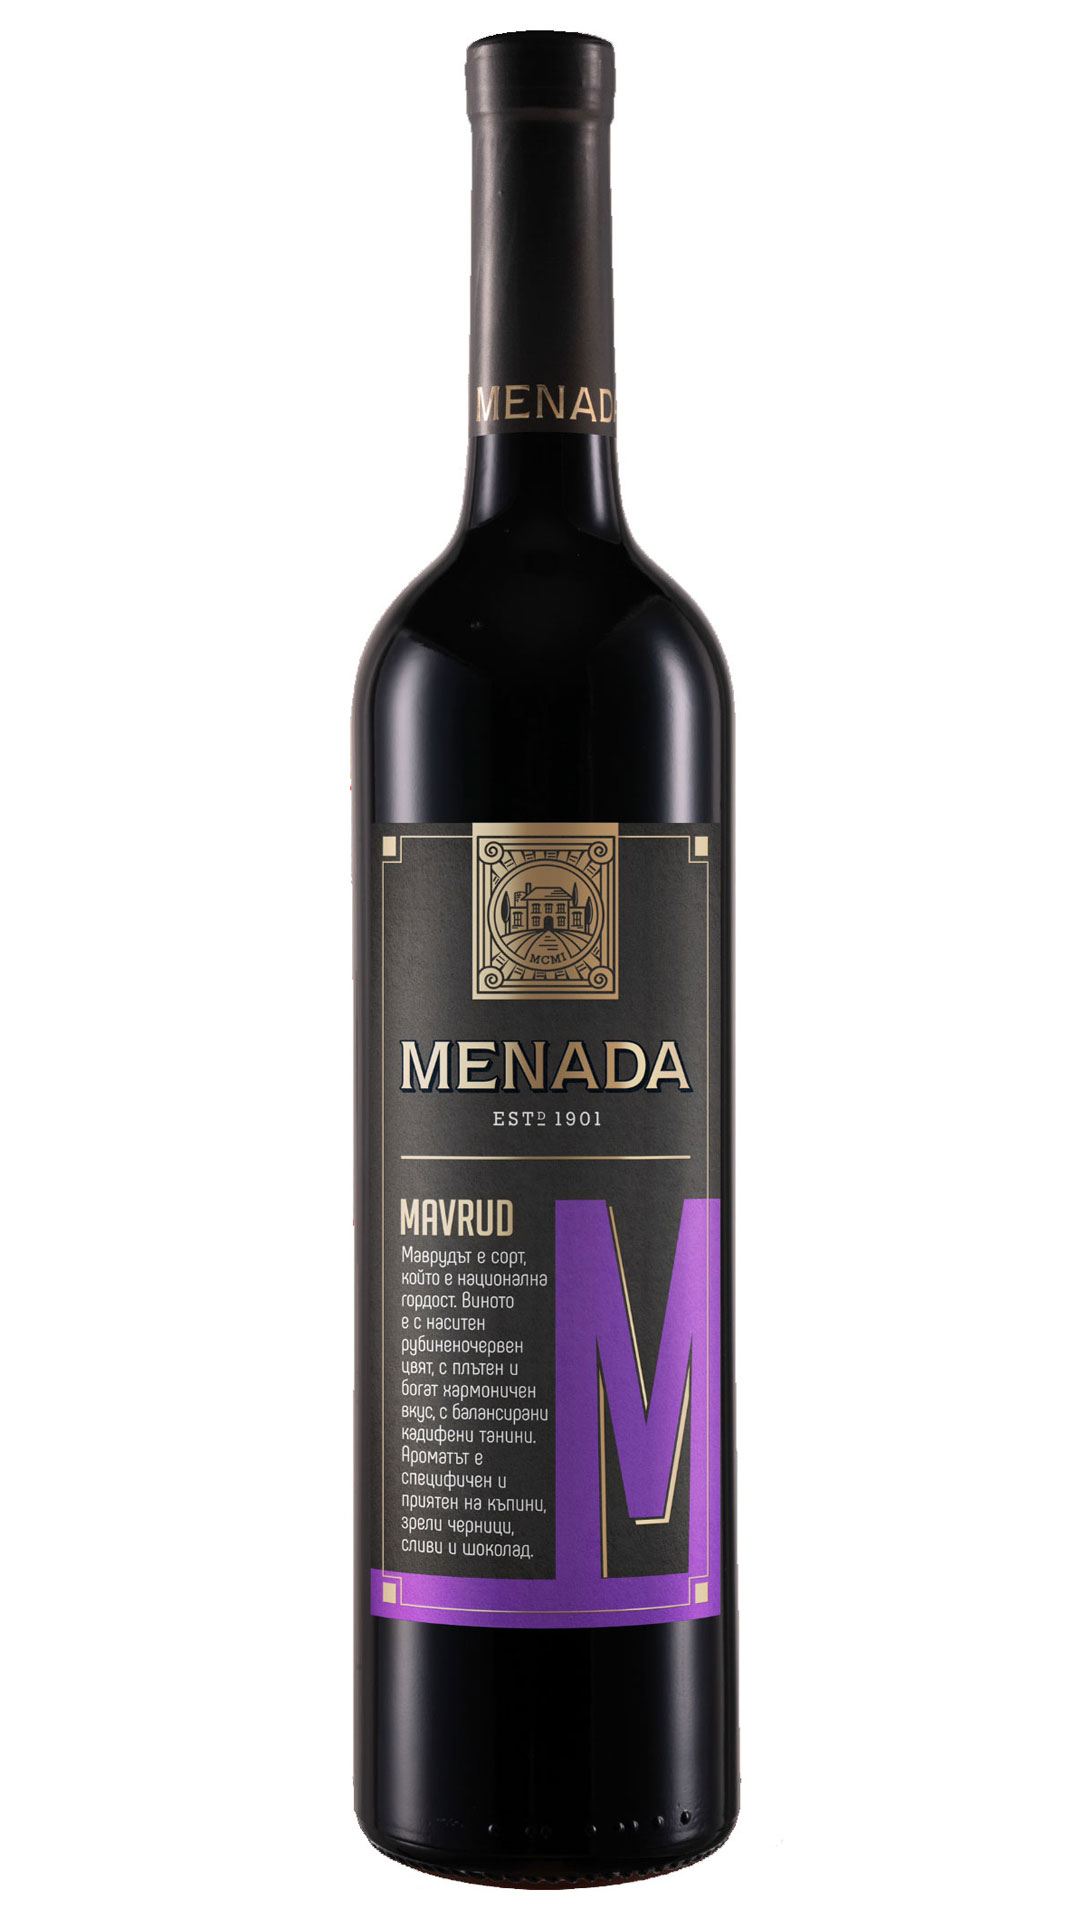 MENADA MAVRUD PGI Thracian Valley - Menada Winery 